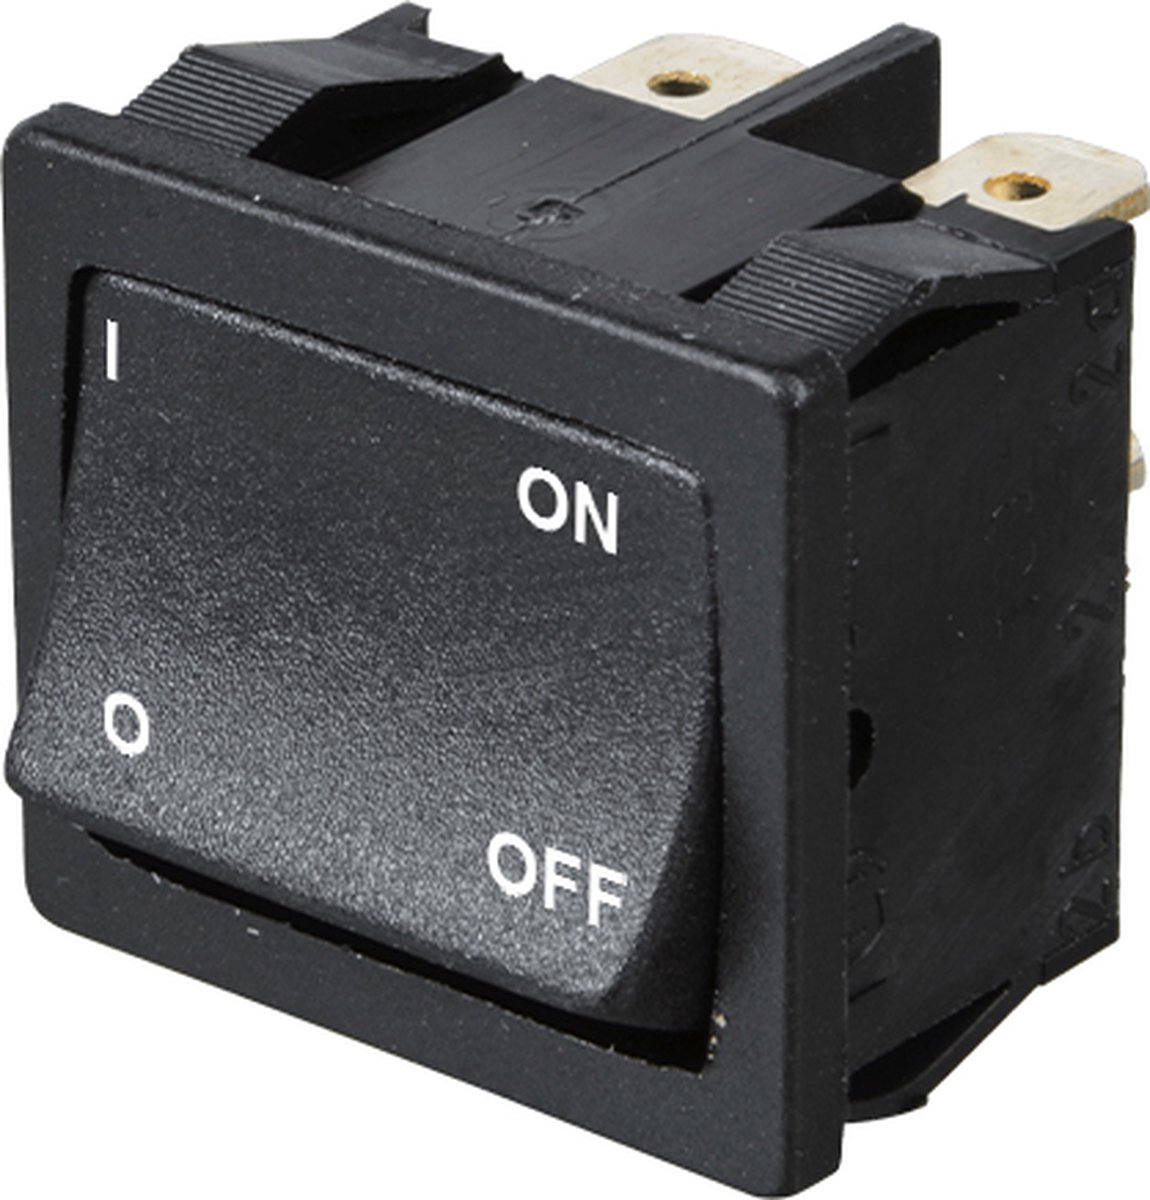 Orbit Electronic® Wipschakelaar ON-OFF - 2-pins - 19.4x21.7x22.8mm (bxlxh) - Met Opdruk - 250V - Max. 6A - 1802 - Zwart